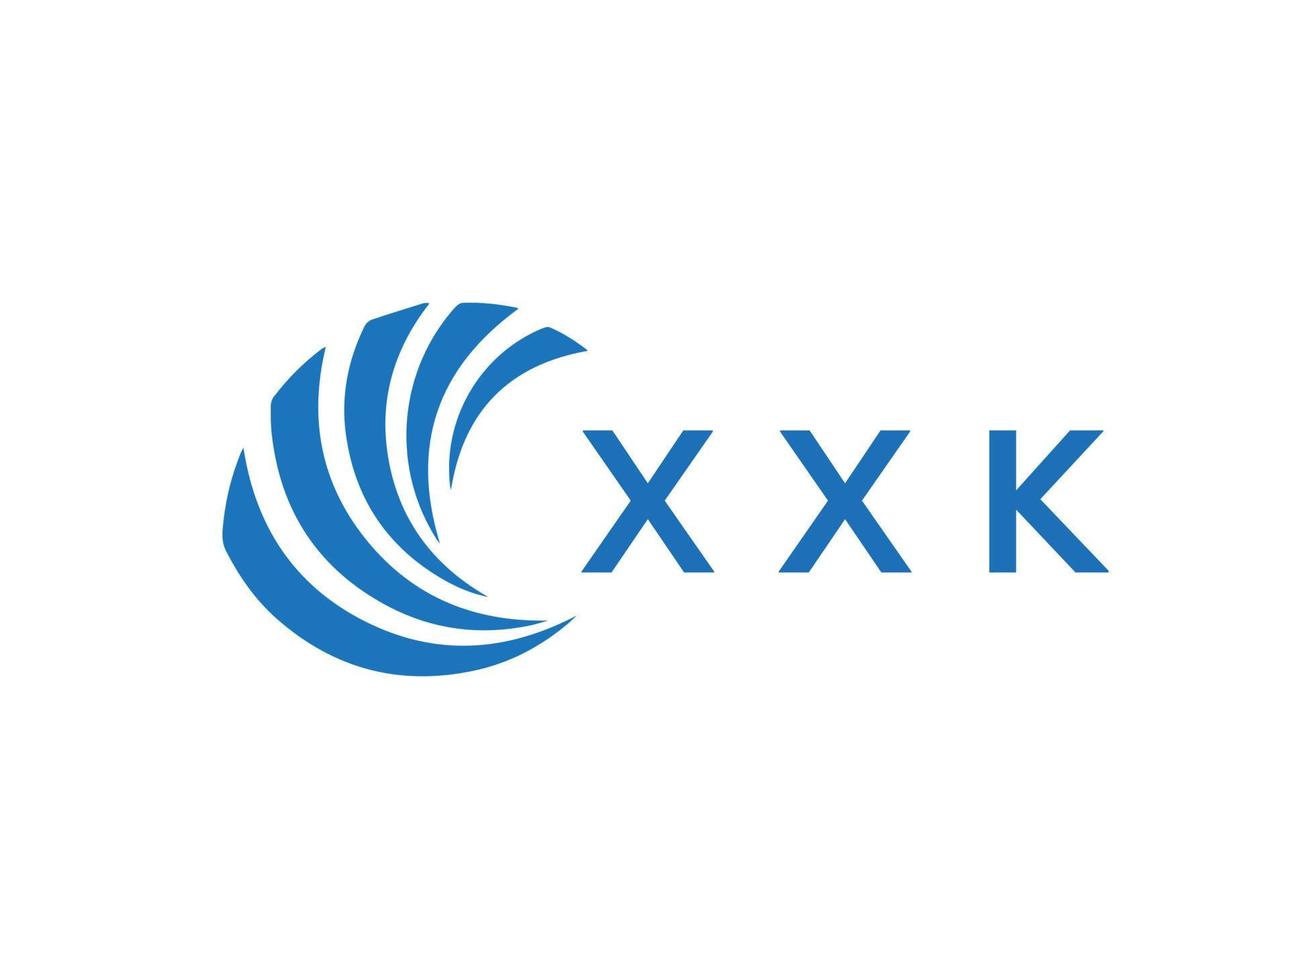 xxk letra logo diseño en blanco antecedentes. xxk creativo circulo letra logo concepto. xxk letra diseño. vector